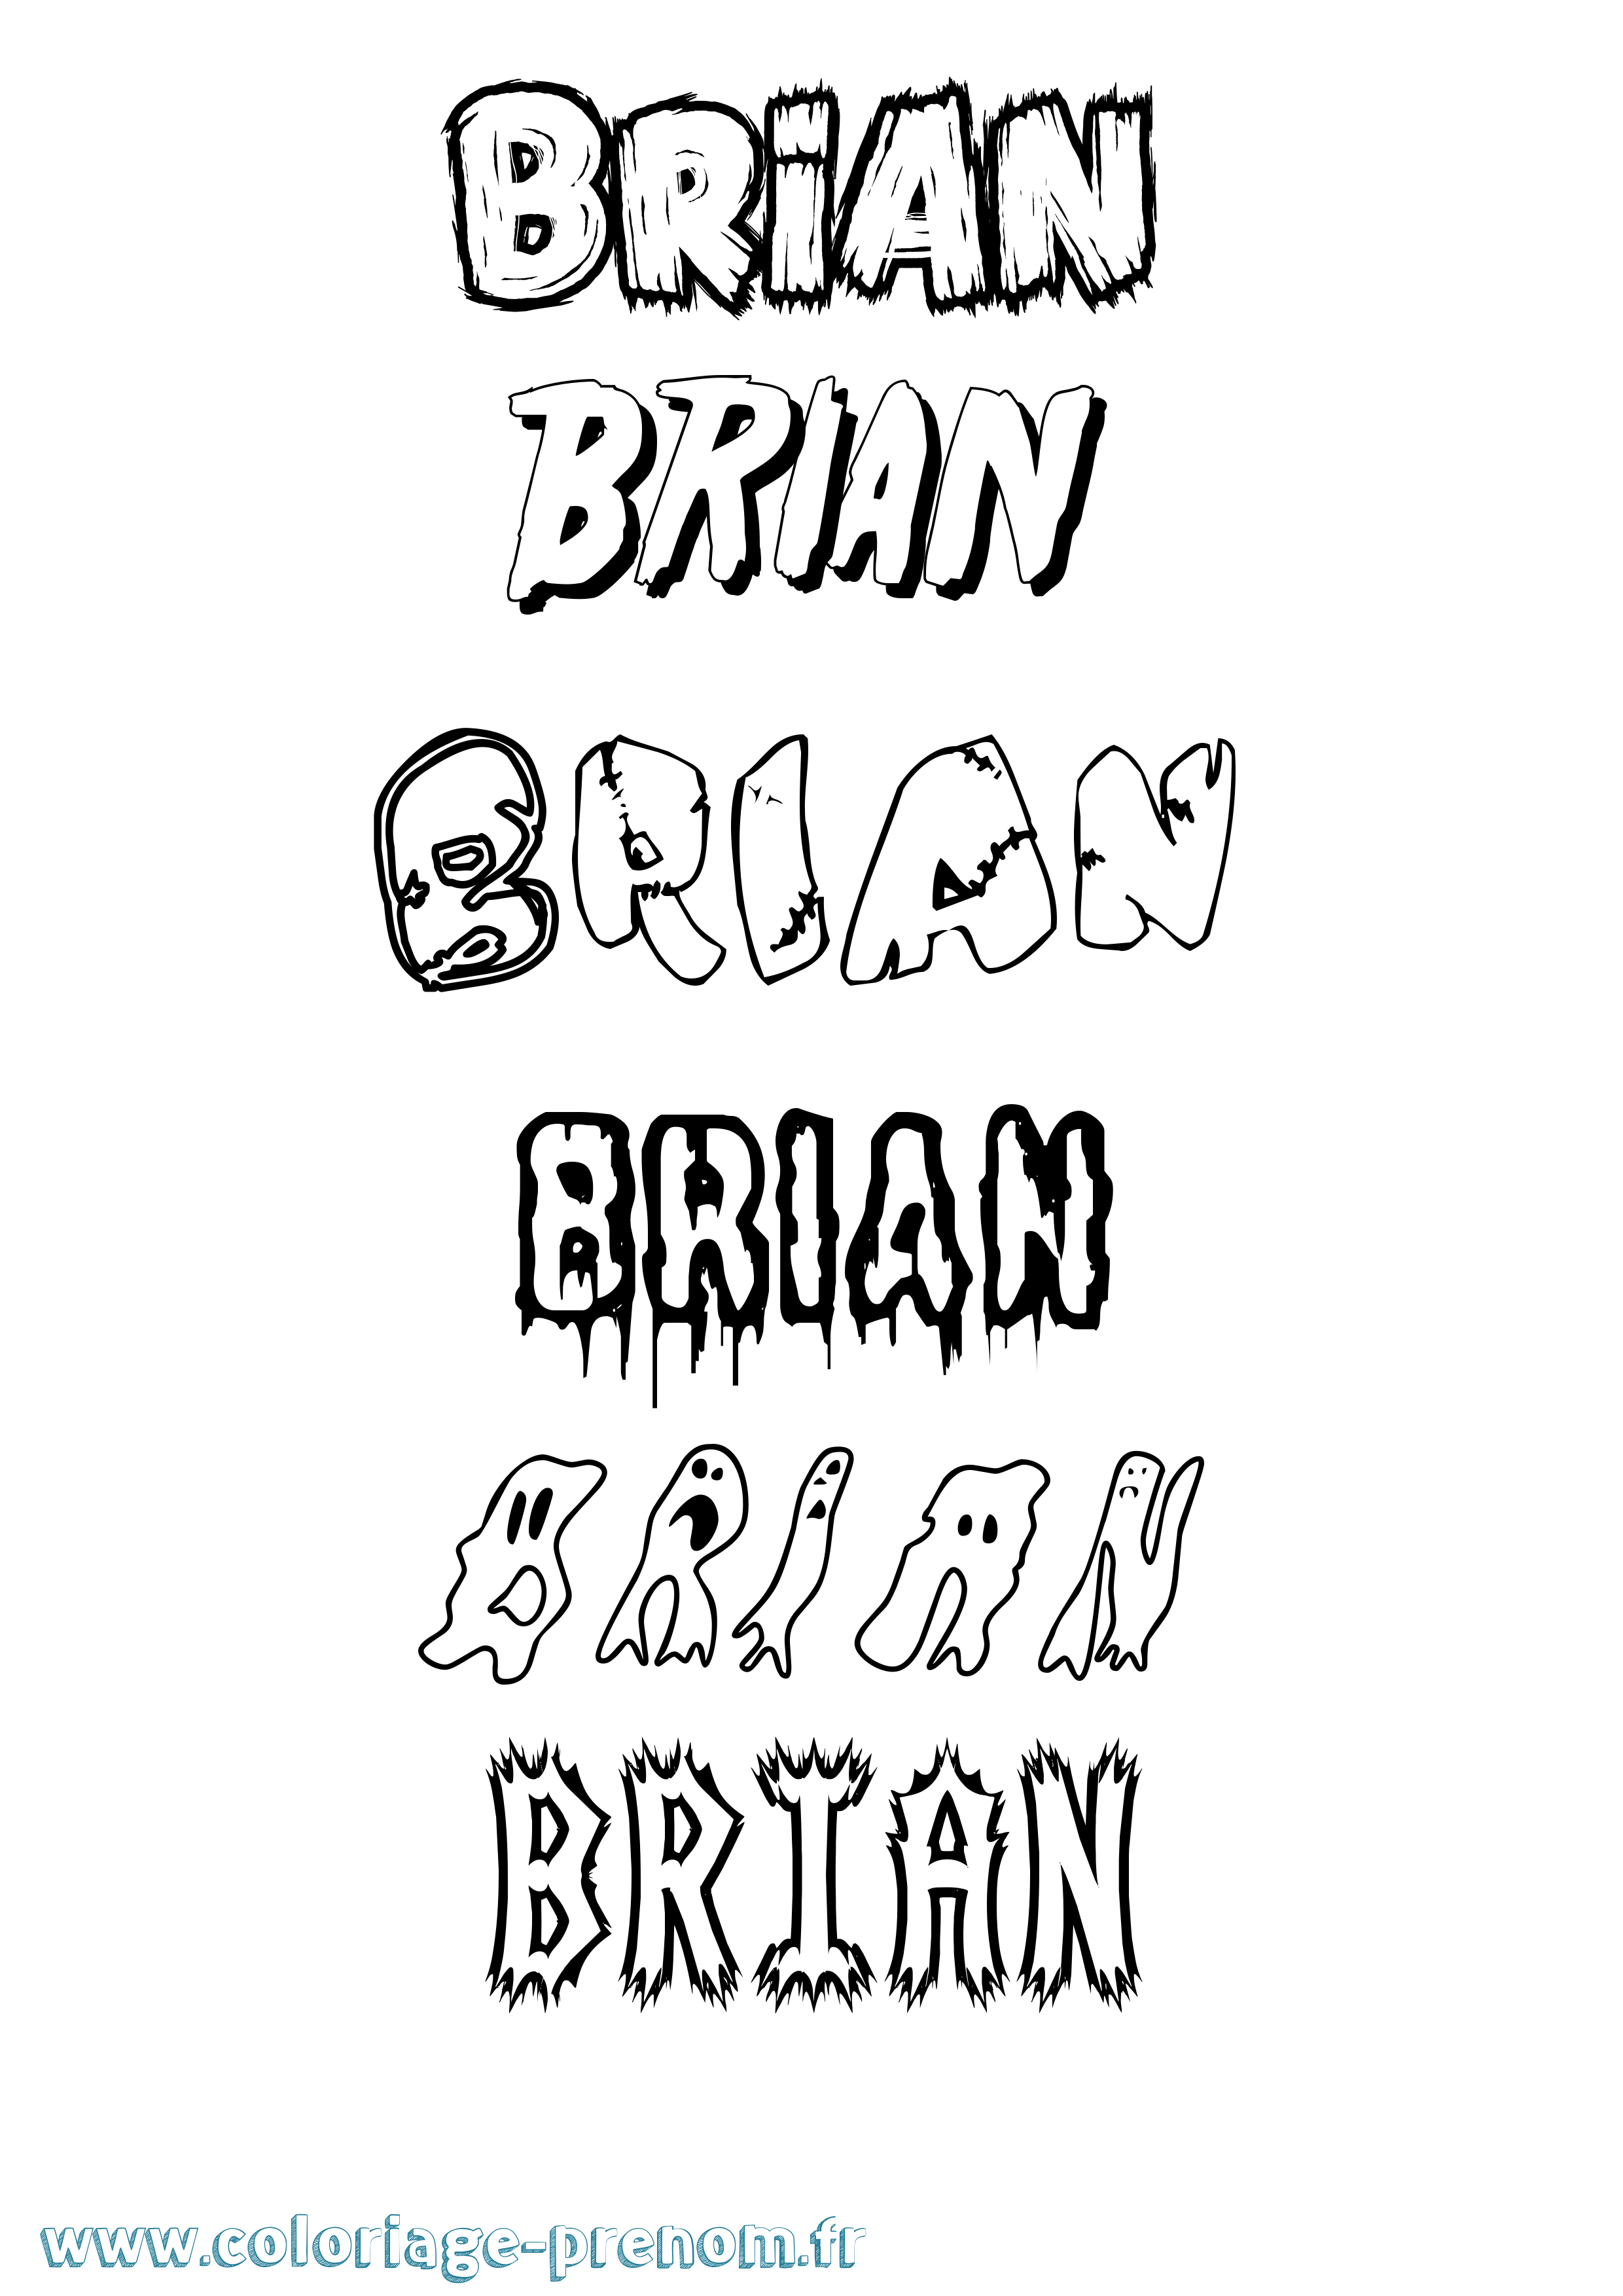 Coloriage prénom Brian